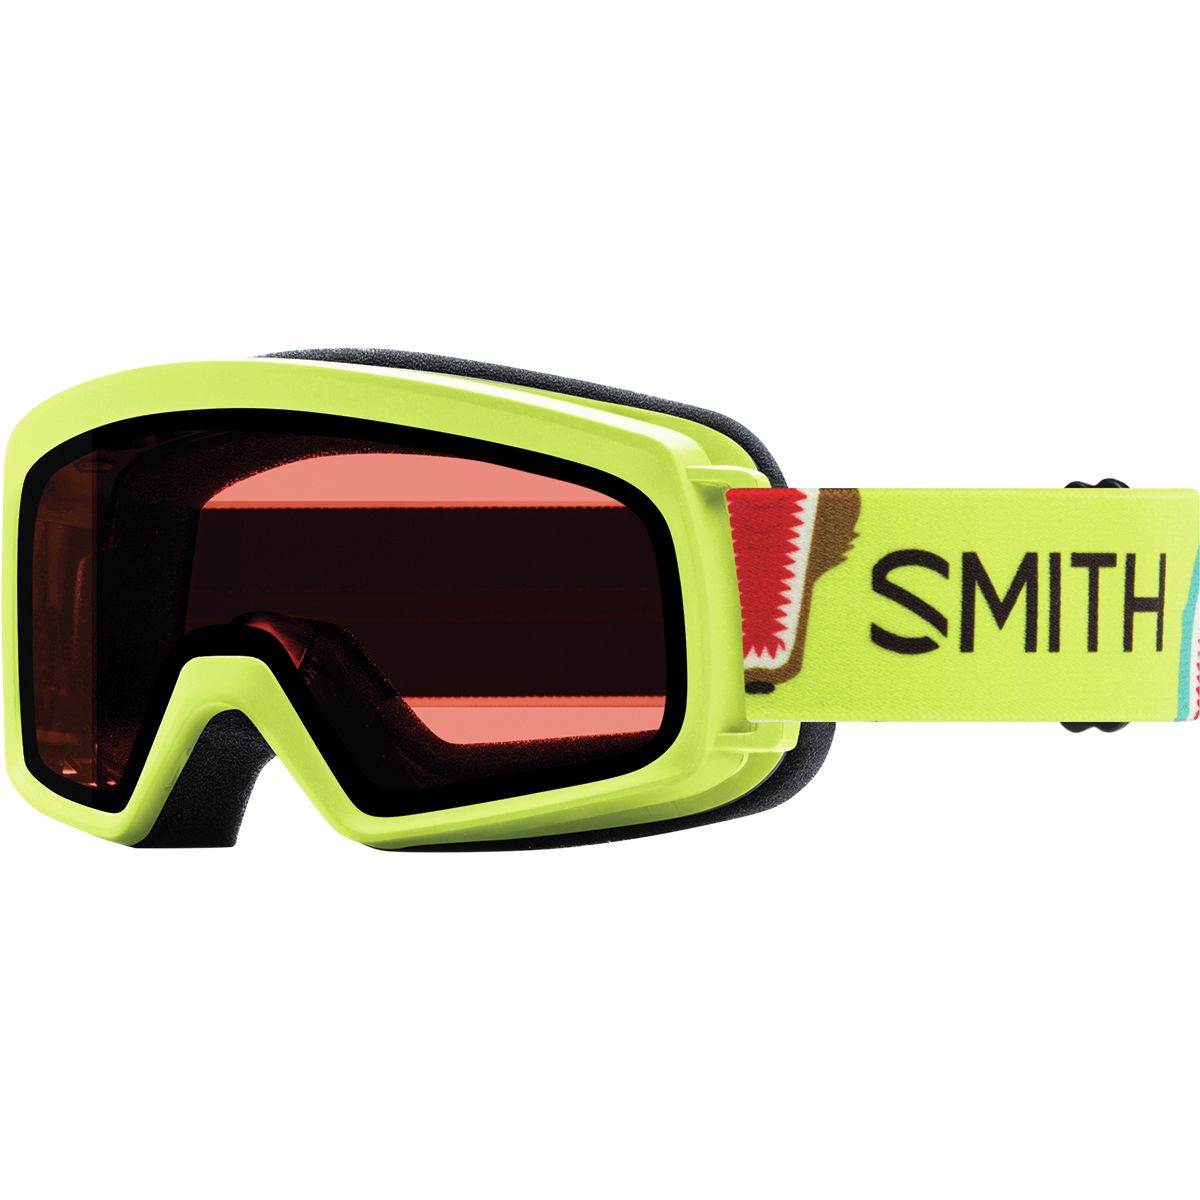 Smith Rascal Goggles - Kids' Acid Animal Mouth/Rc36